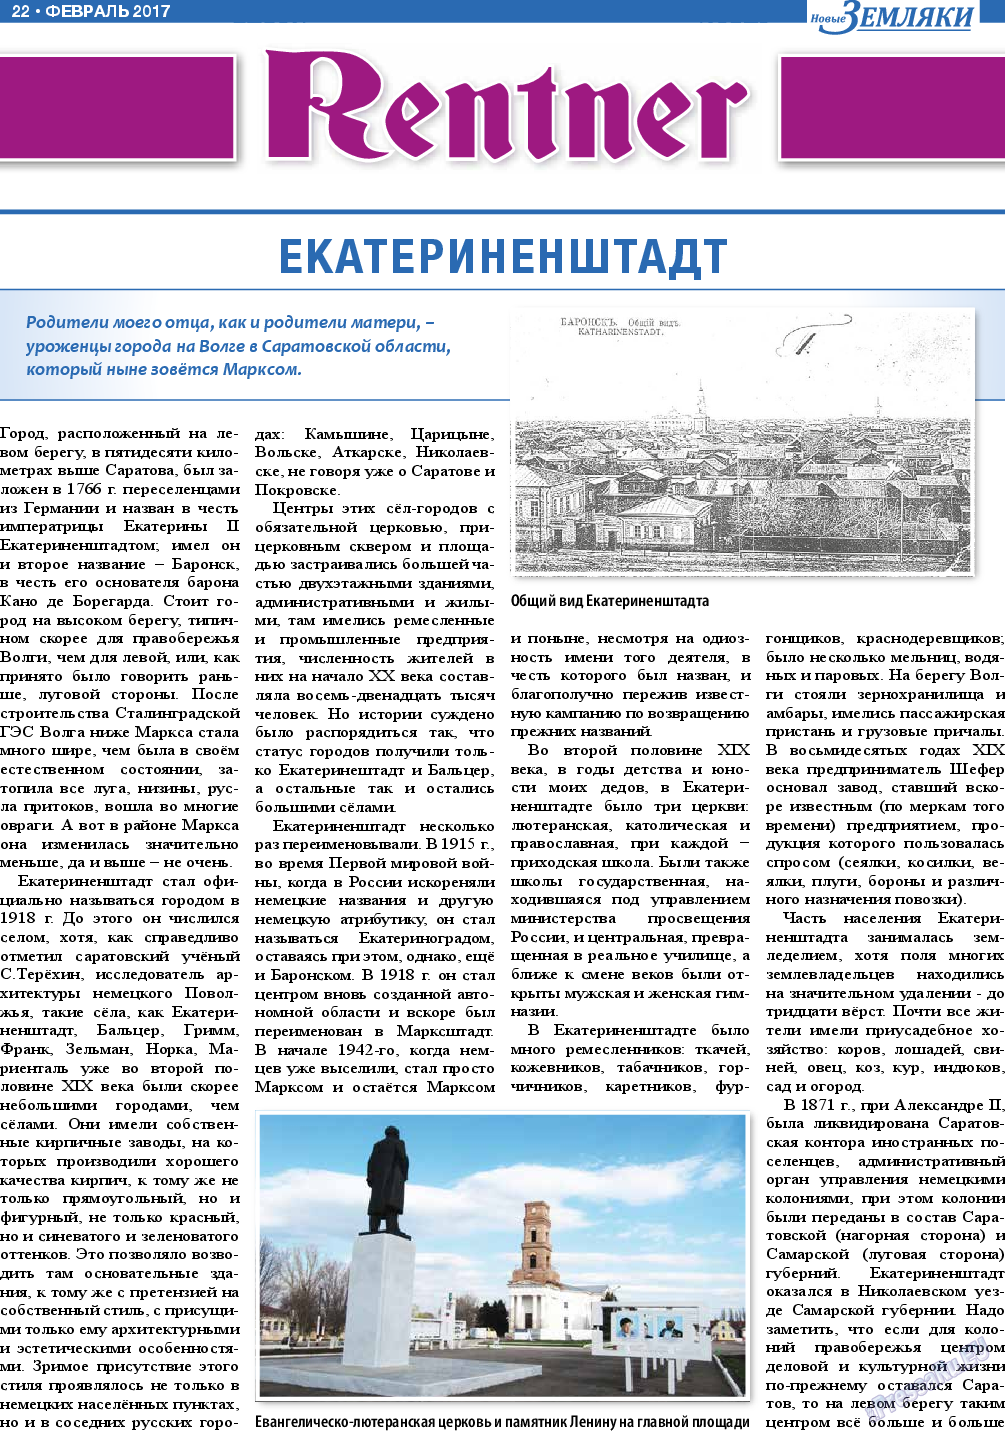 Новые Земляки (газета). 2017 год, номер 2, стр. 22